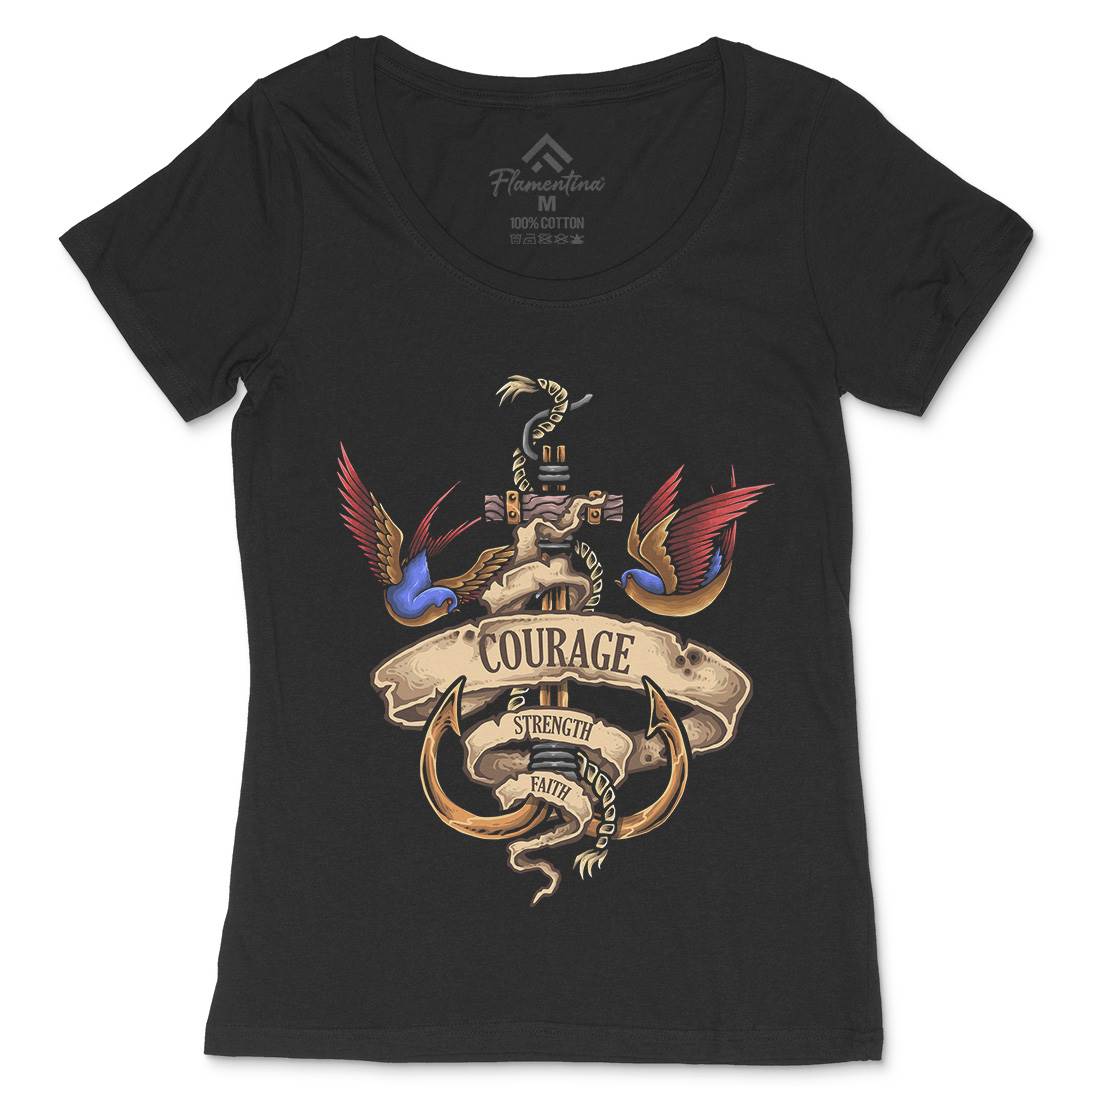 Nautical Spirit Womens Scoop Neck T-Shirt Navy A443